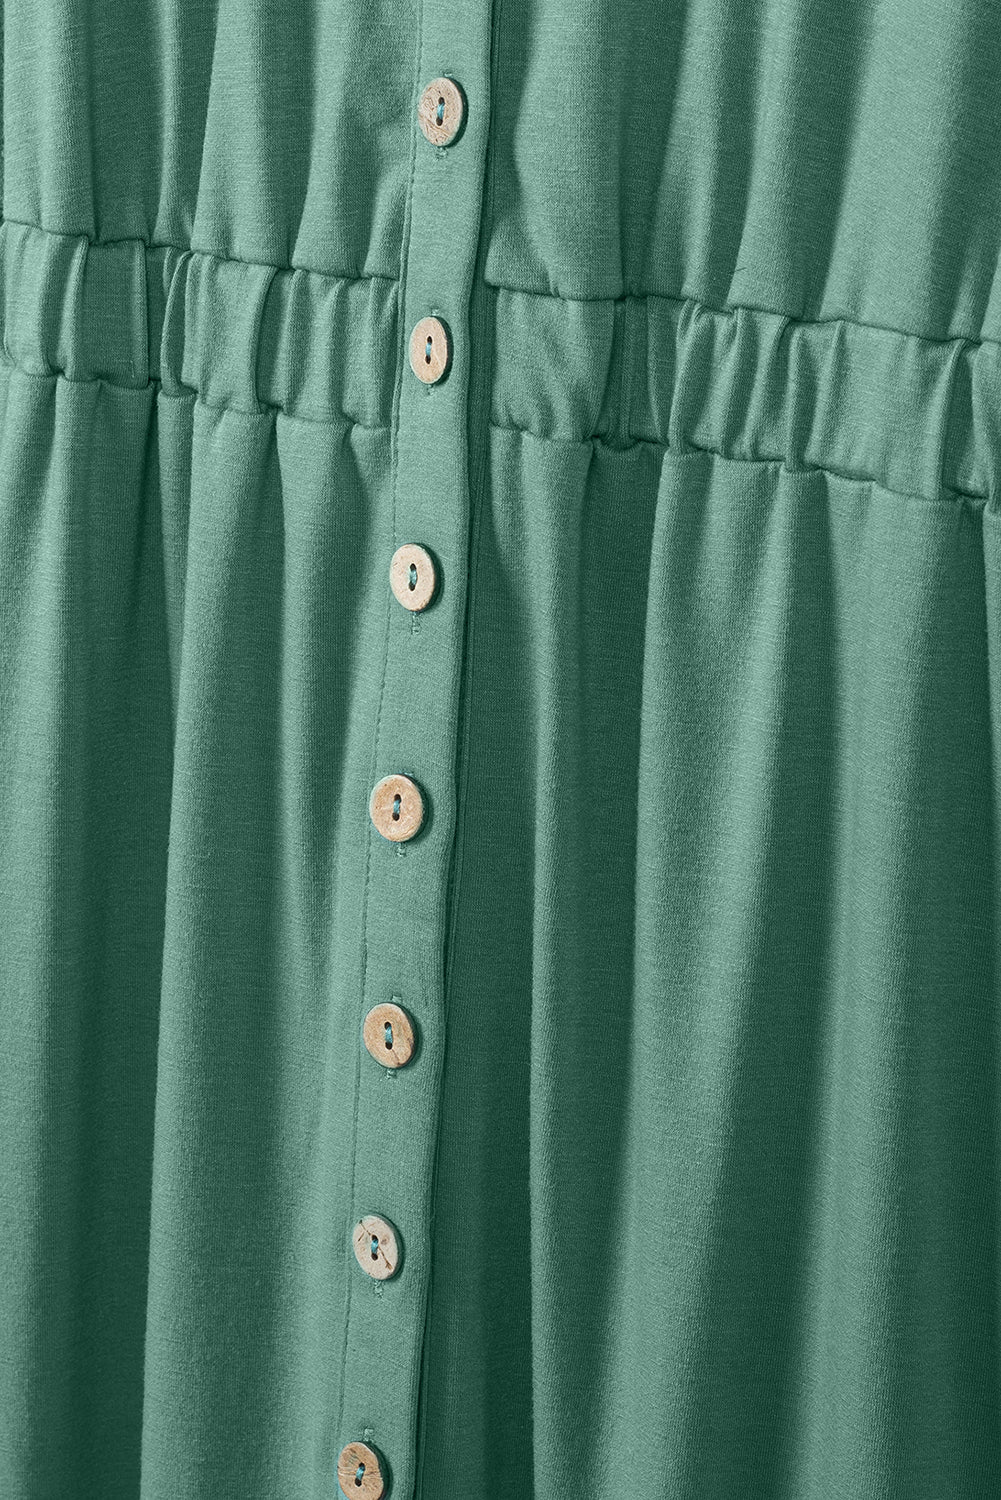 Mini abito senza maniche a vita alta con bottoni verdi